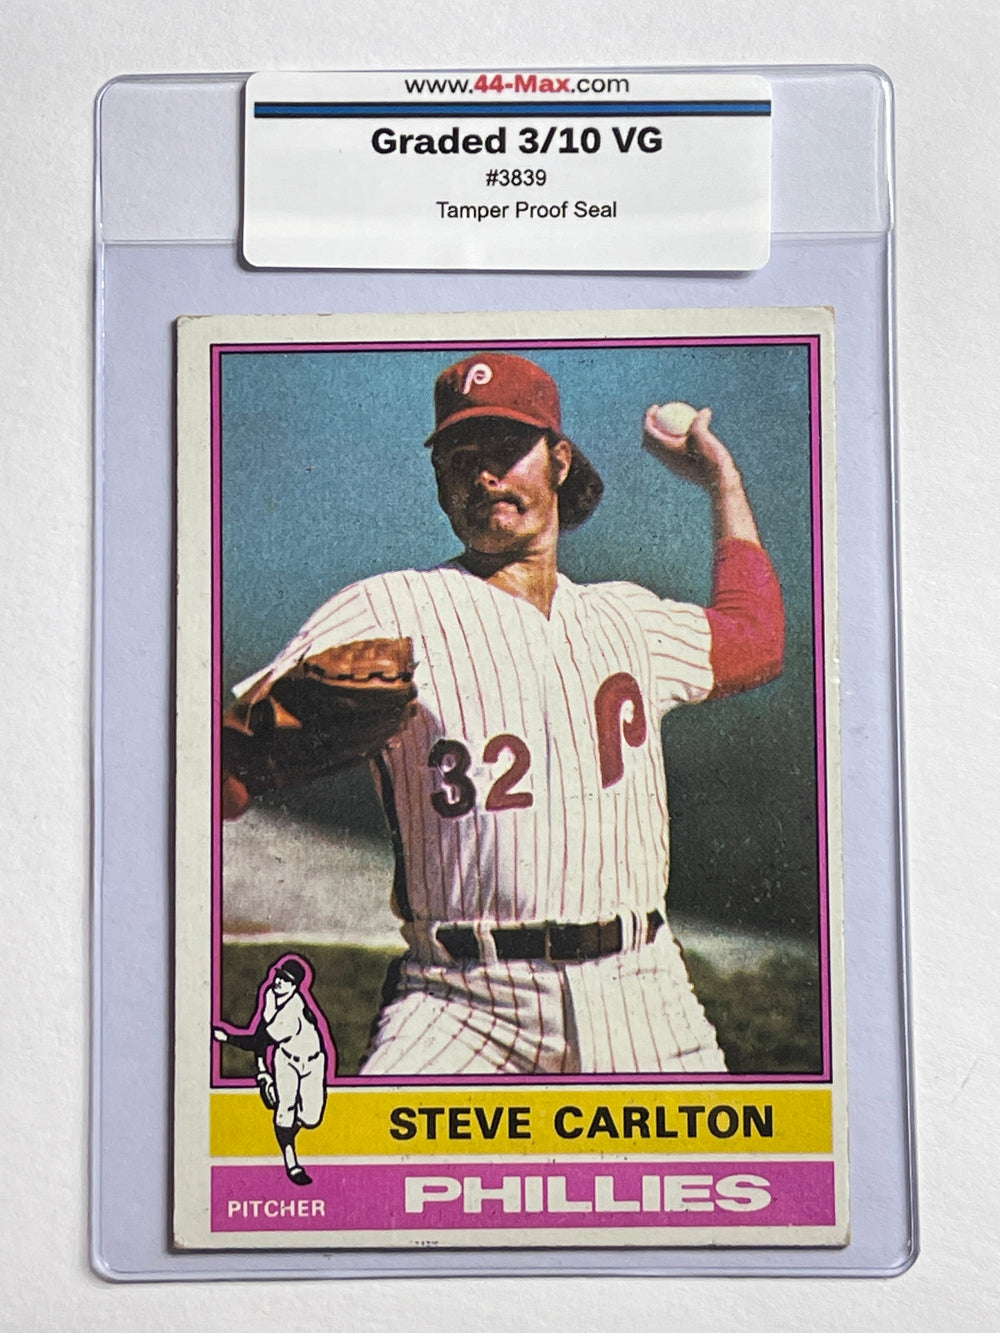 Steve Carlton 1976 Topps Baseball Card. 44-Max 3/10 VG #3839